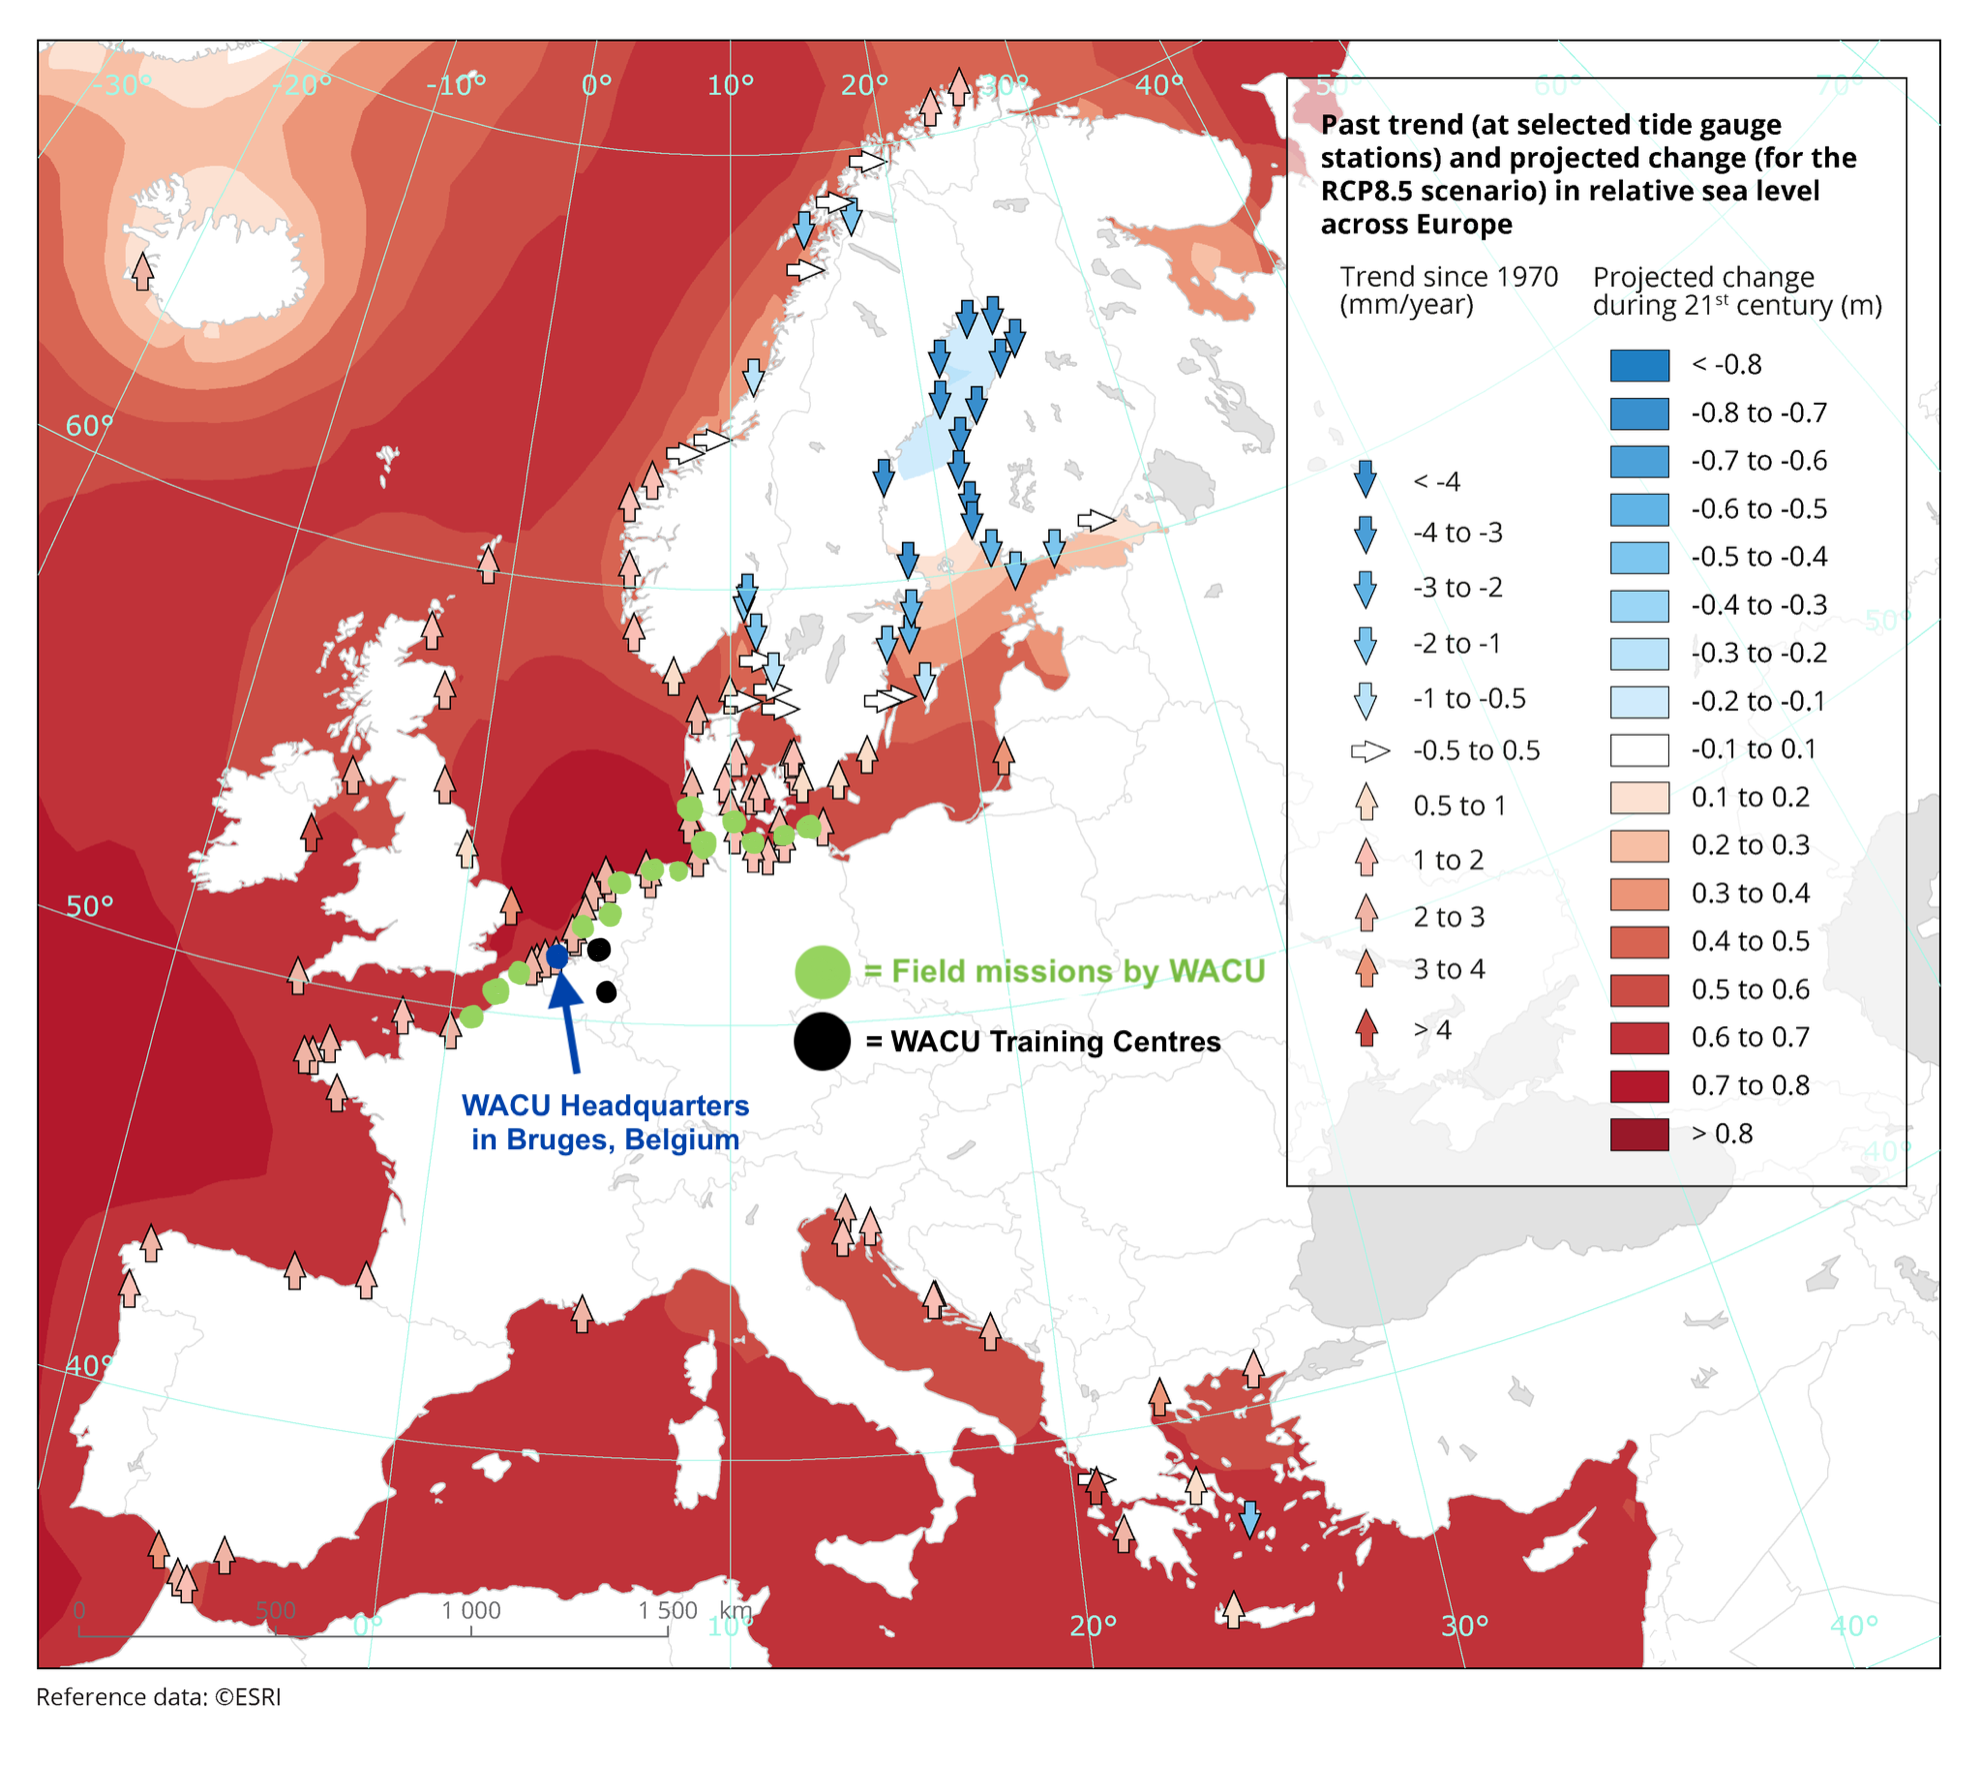 Europe-Sea-Level-Rise-Icon-2-Map